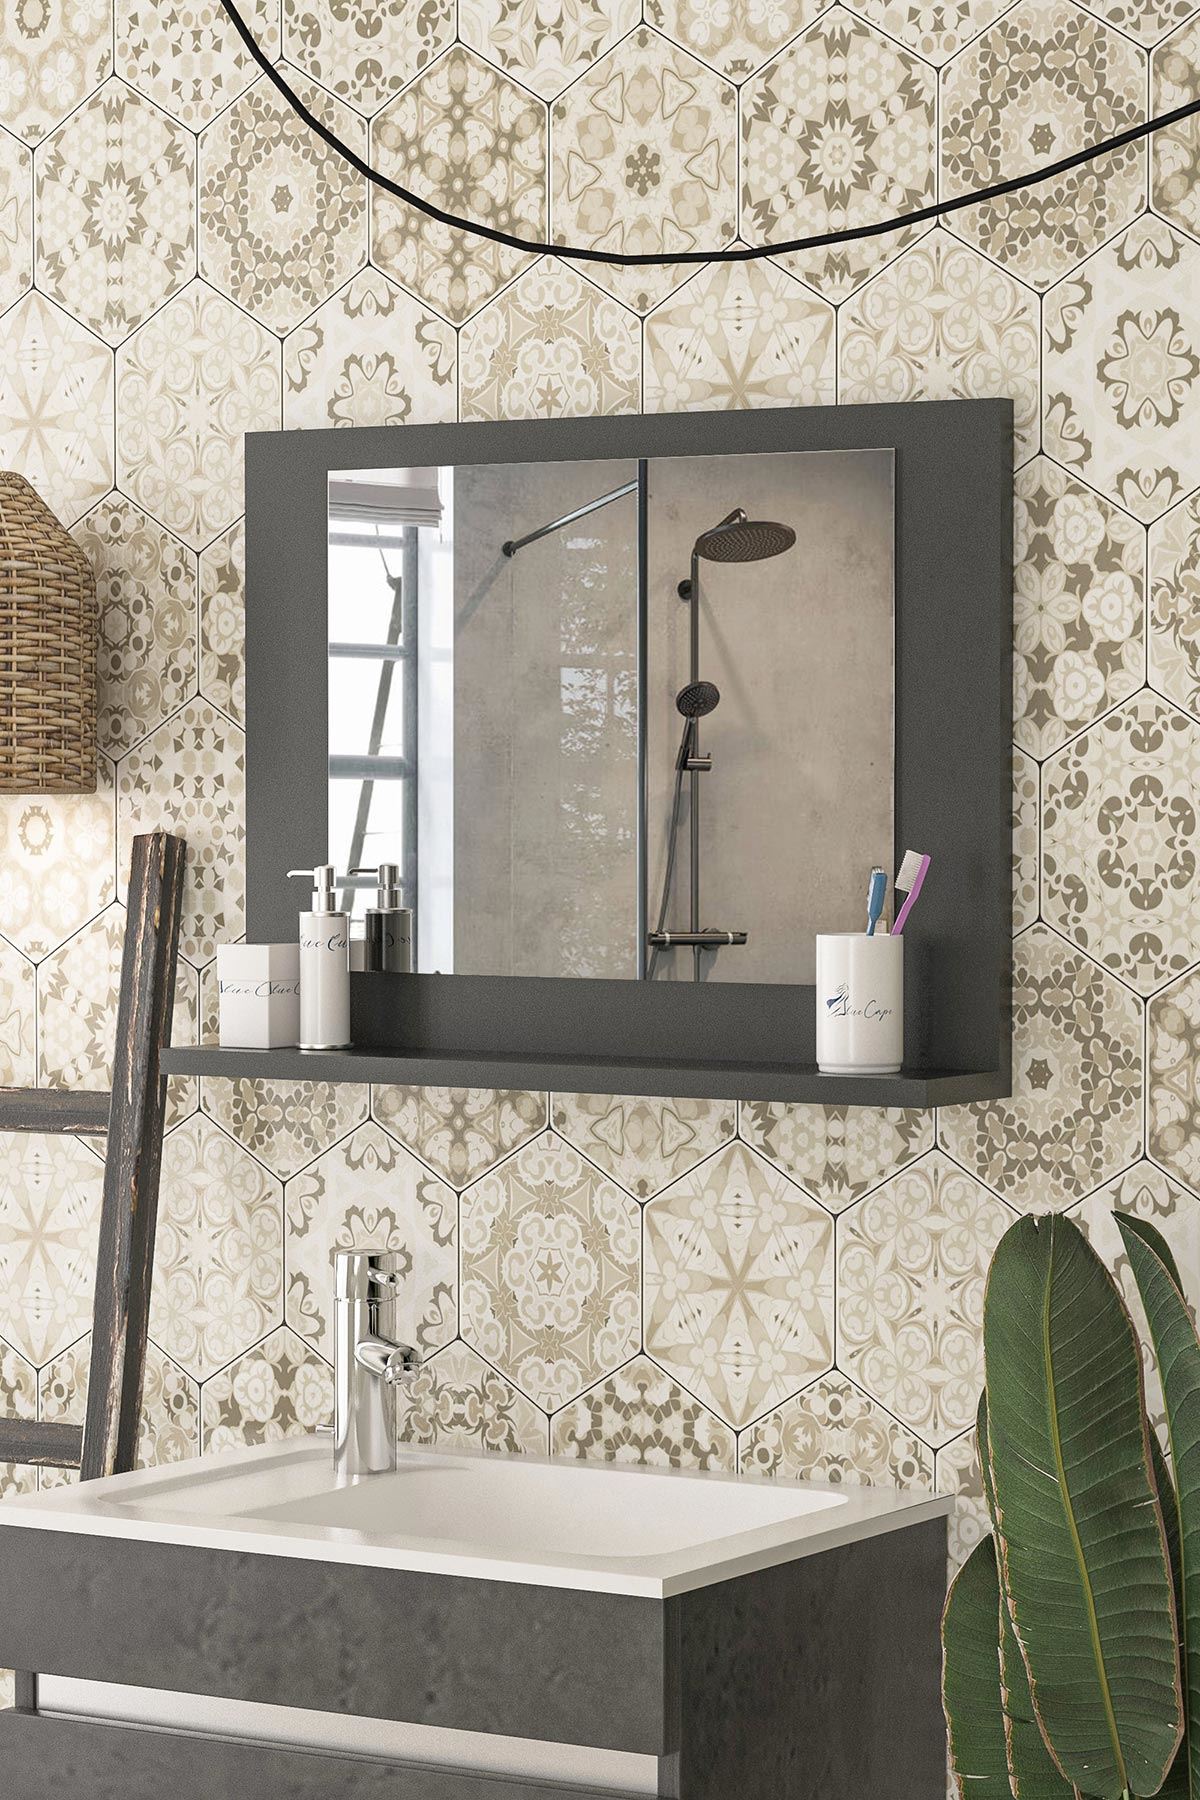 Bofigo 60x45 Cm Modena Banyo Rafı Lavabo Rafı Aynalı Raf Banyo Aynası Antrasit